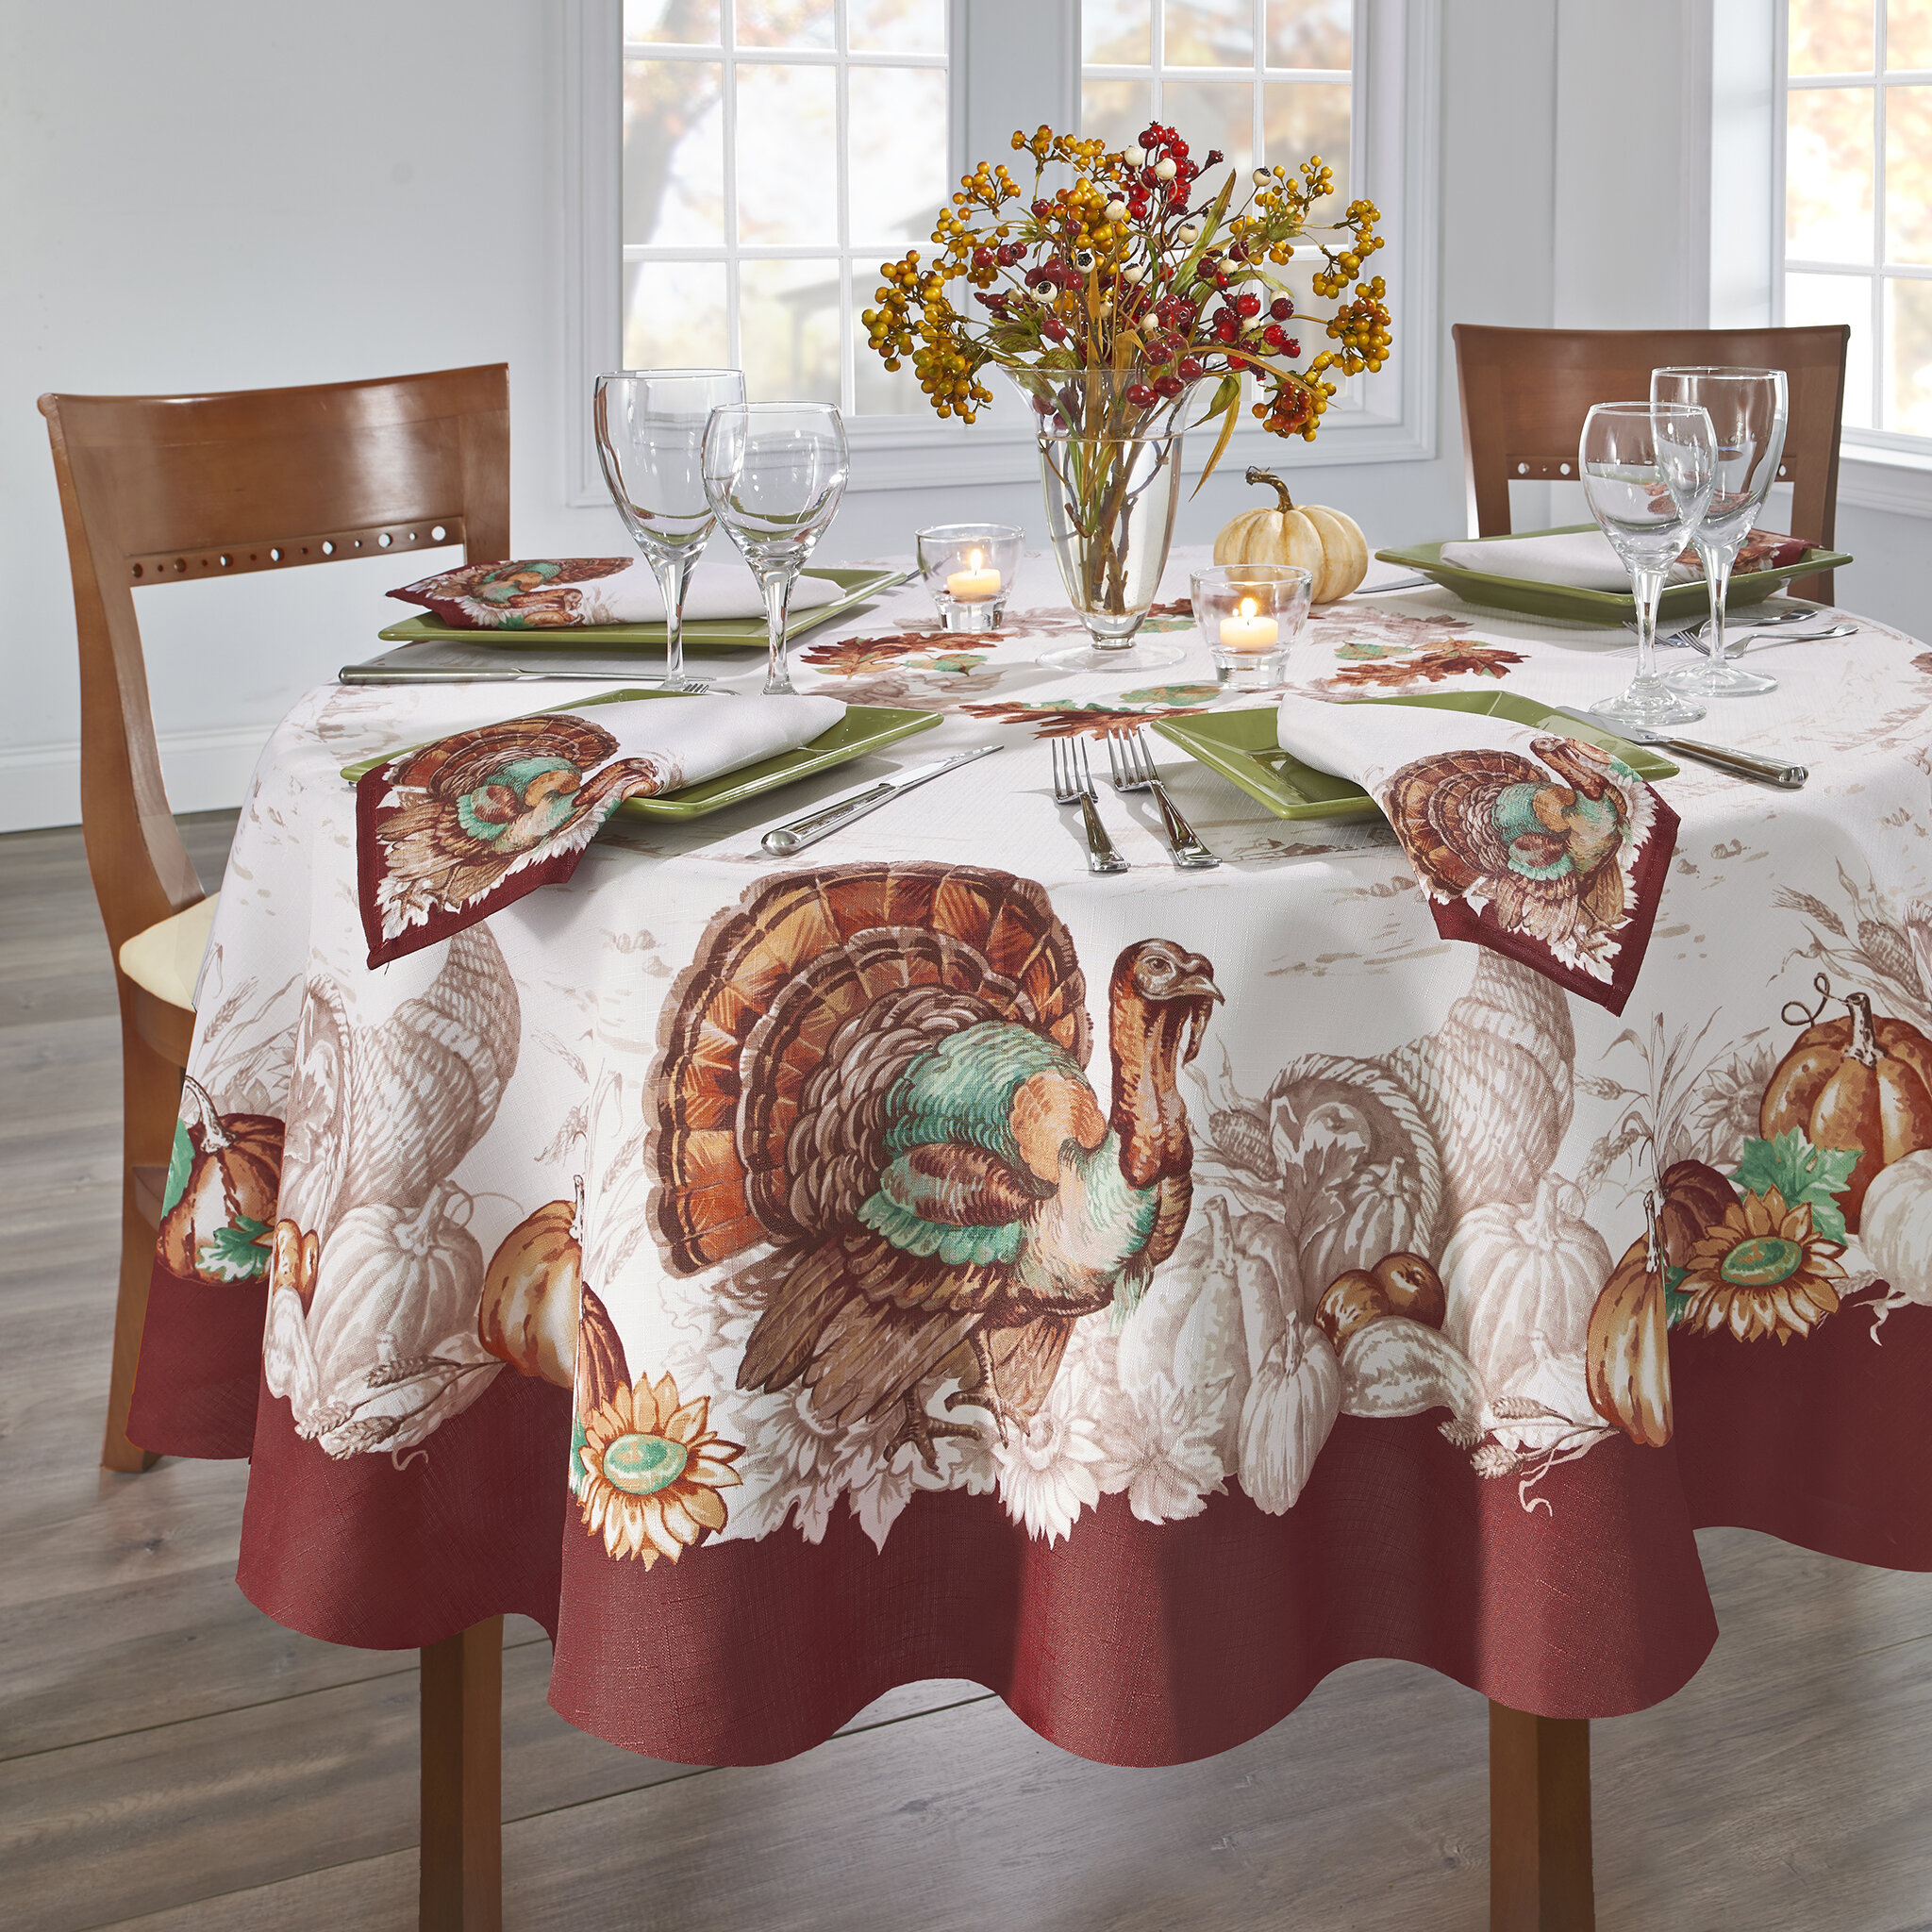 https://assets.wfcdn.com/im/44795229/compr-r85/8692/86925953/monterrey-round-no-pattern-thanksgiving-polyester-tablecloth.jpg